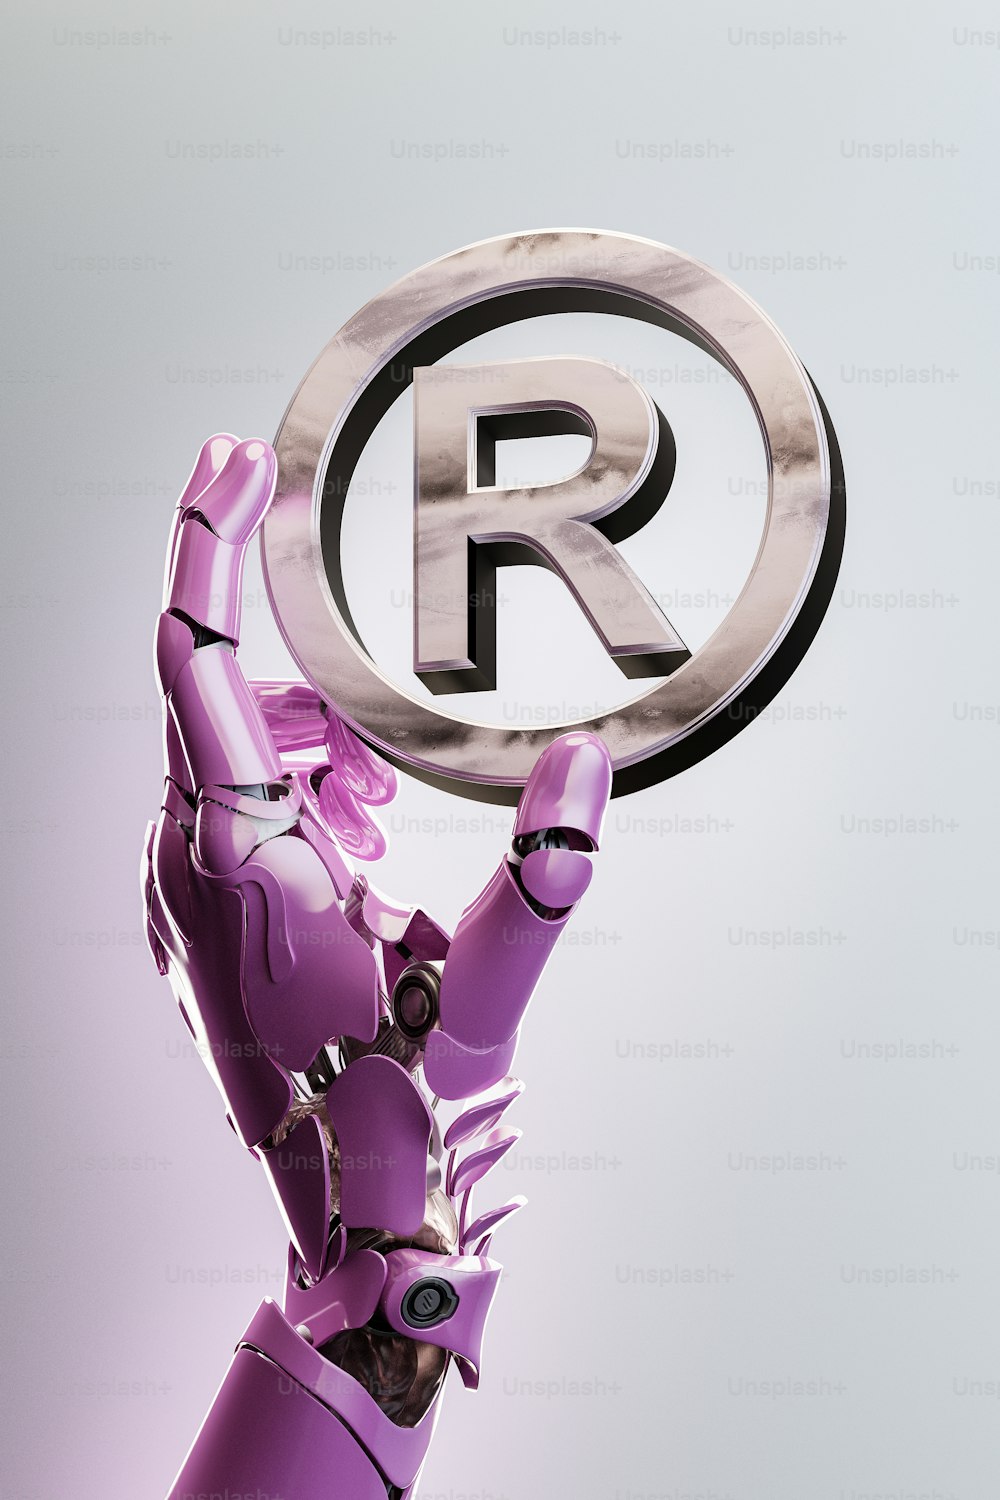 Ein Roboter, der ein Schild mit dem Buchstaben R hochhält